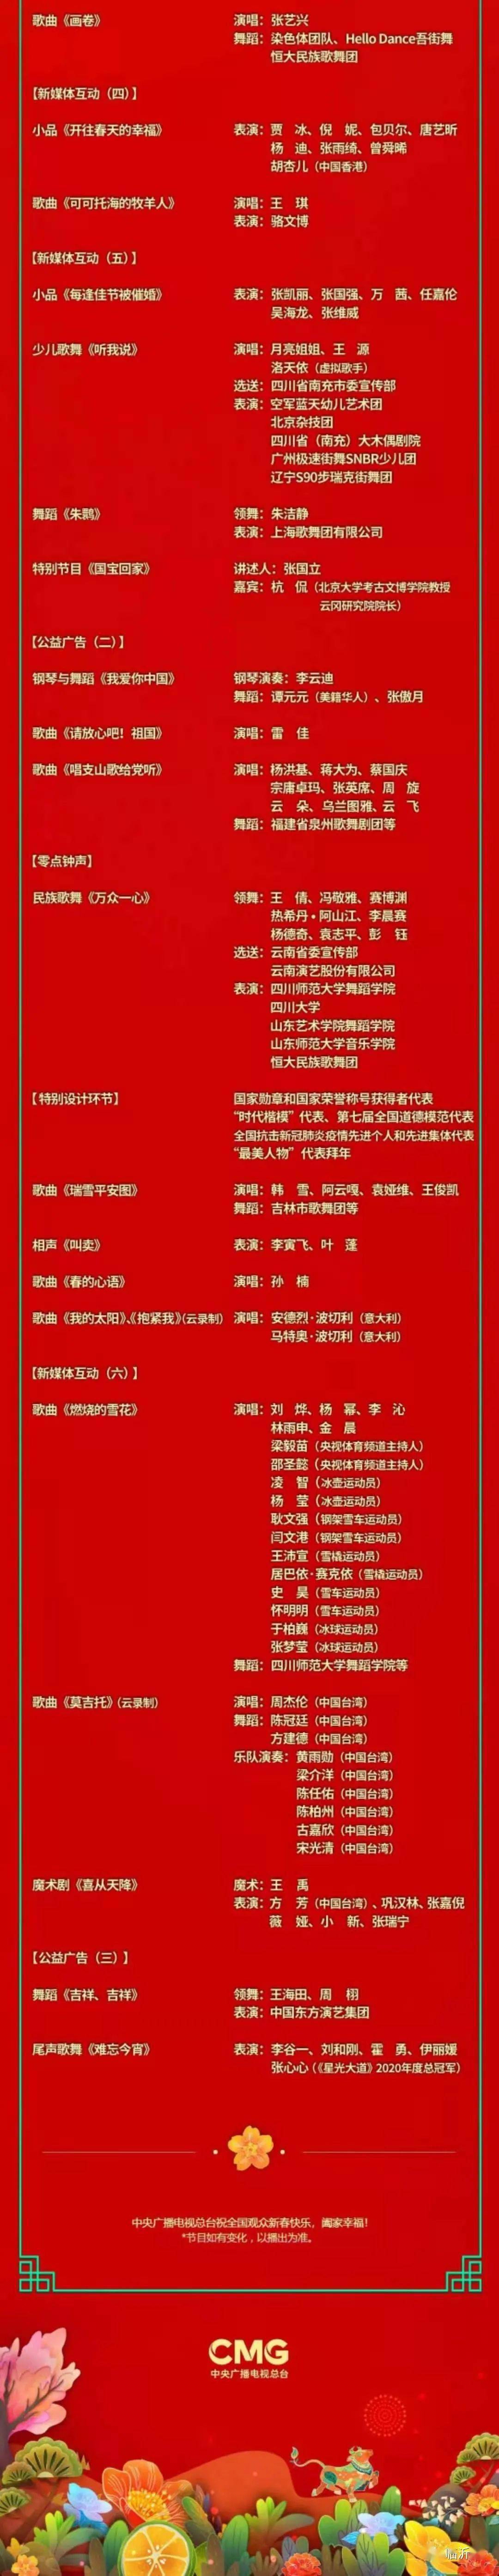 分会场主持人:马跃,张泽群,蔡紫,郑毅 2021年春节联欢晚会节目单如下